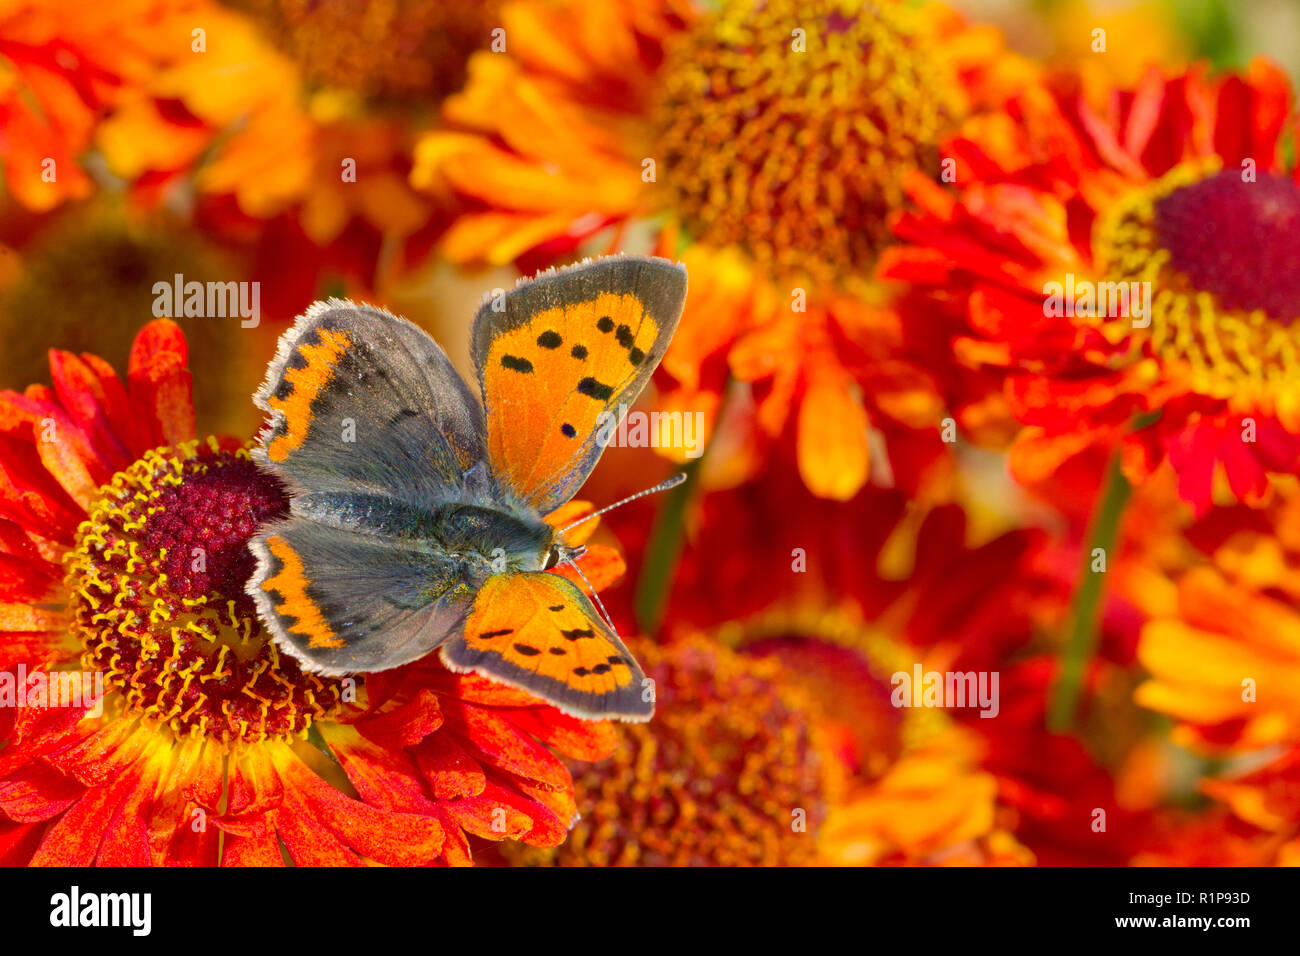 Petite phlaeus (Lycaena) papillon adulte se nourrit de Perrenial tournesol (Helianthus) fleurs dans un jardin. Powys, Pays de Galles. Septembre. Banque D'Images